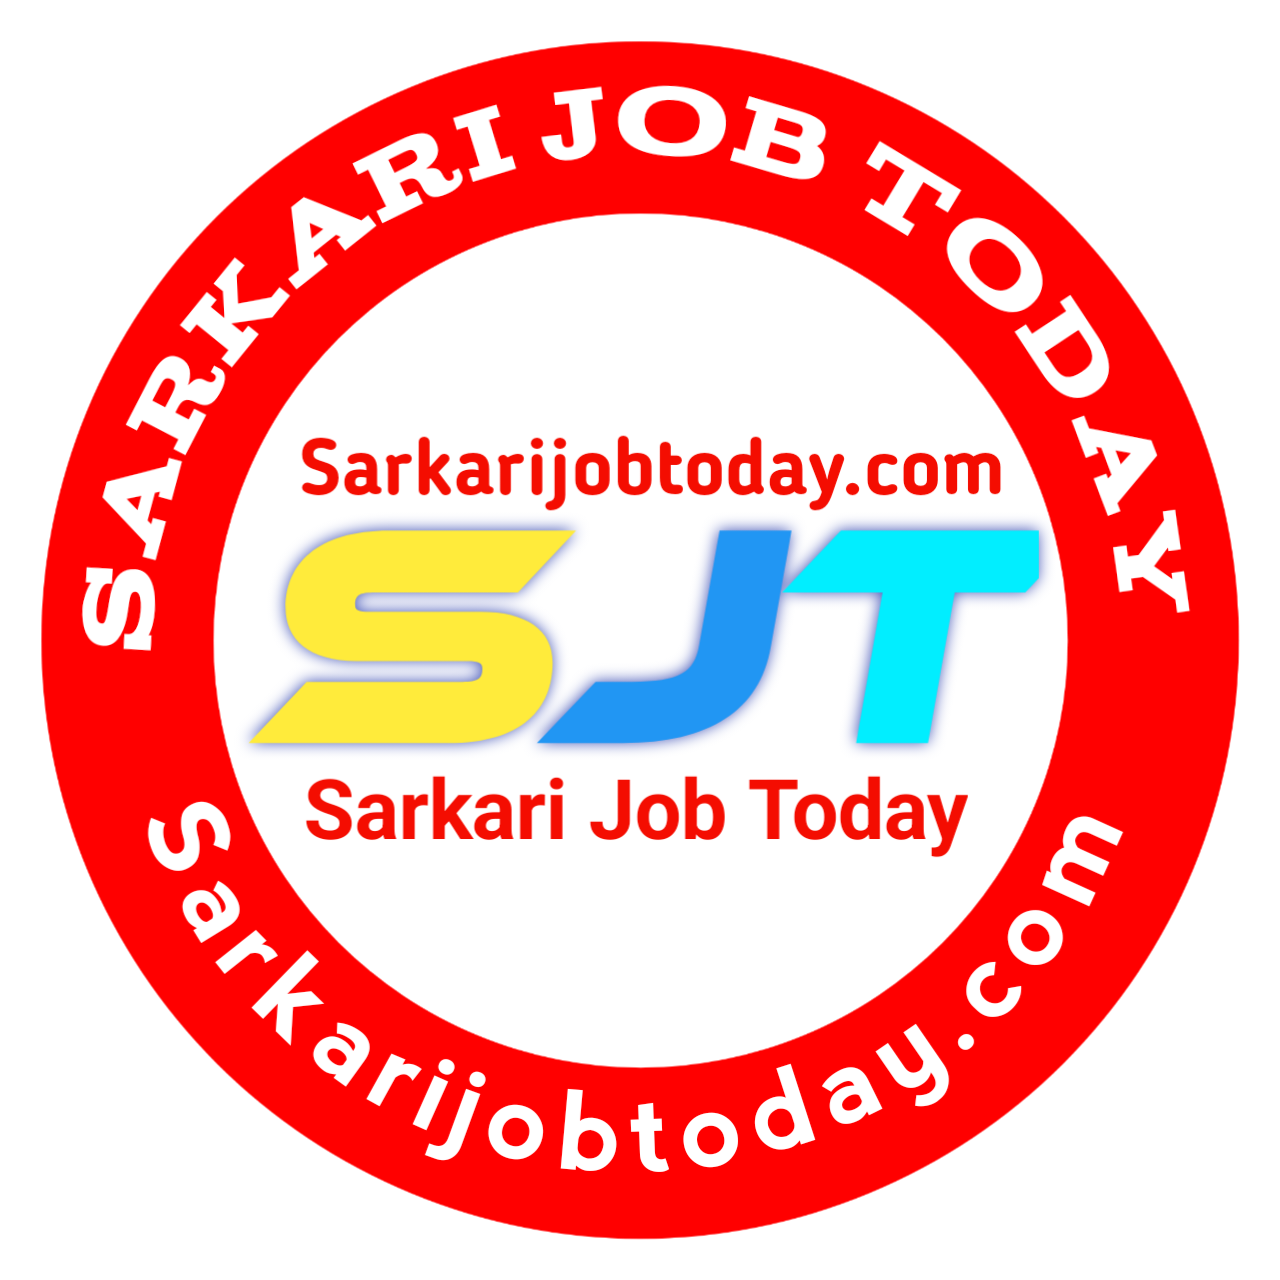 Sarkari job today logo